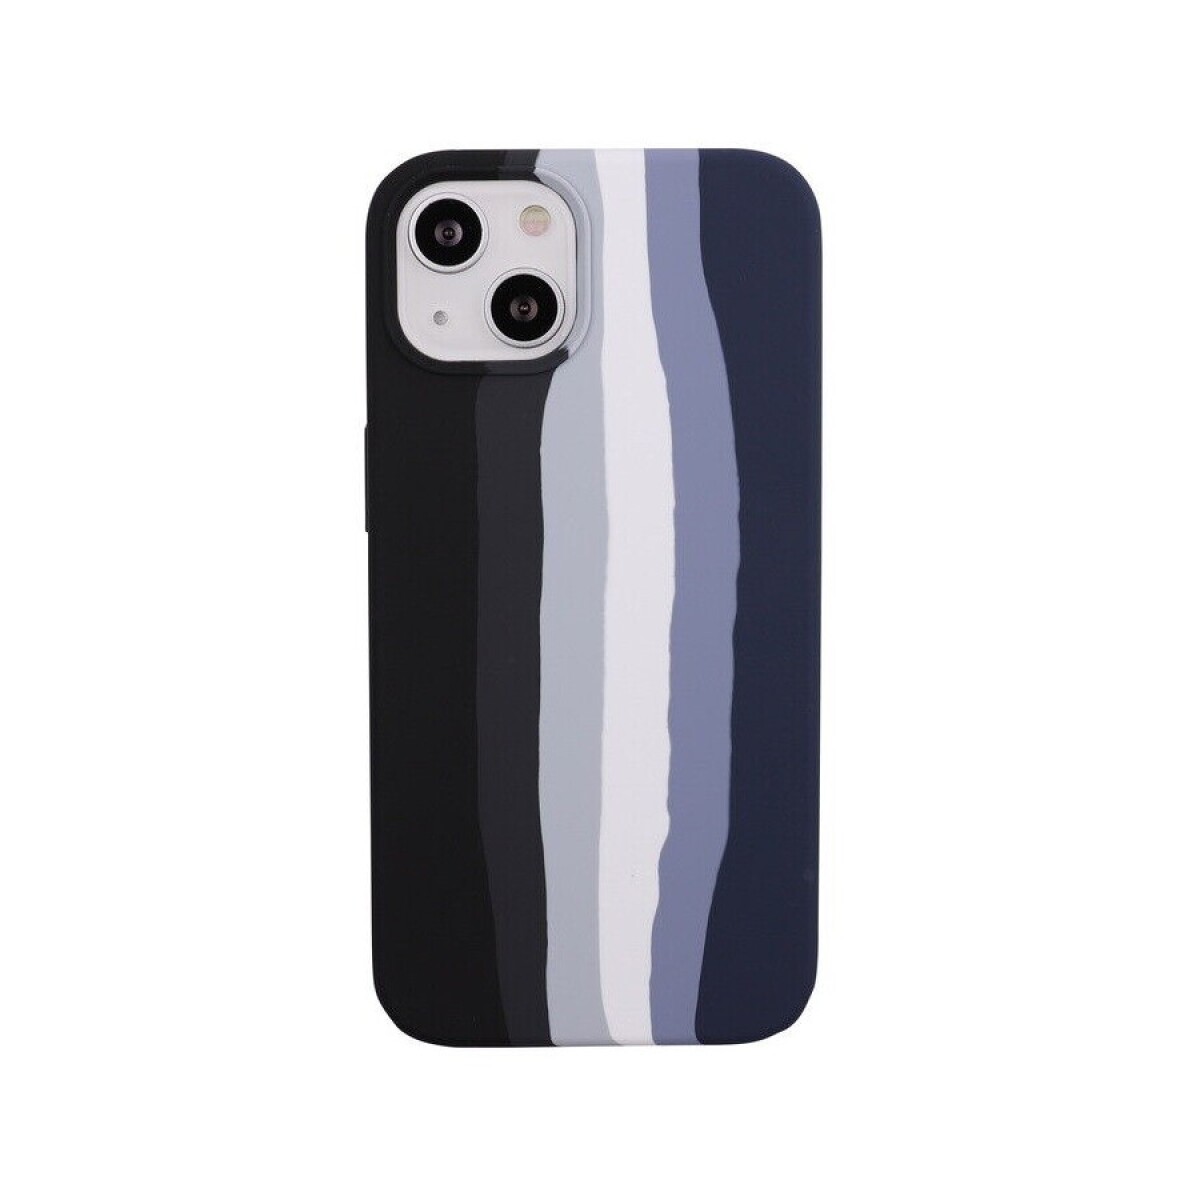 Protector case de silicona iphone 13 diseño arcoiris - Negro 